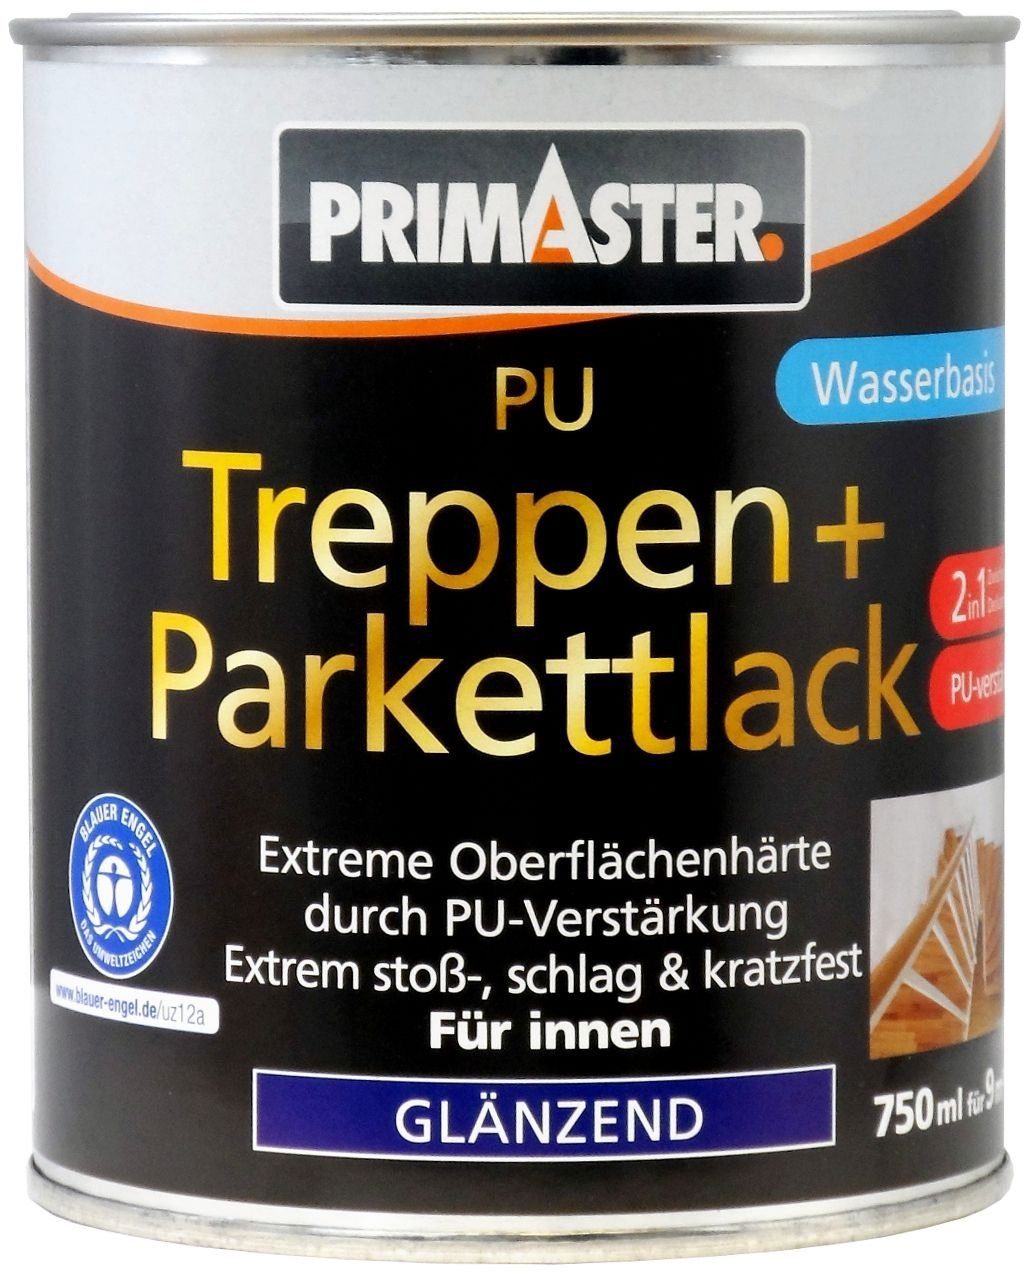 Parkettlack Parkettlack 750 Primaster 2in1 Primaster PU Treppen- und und ml Treppen-